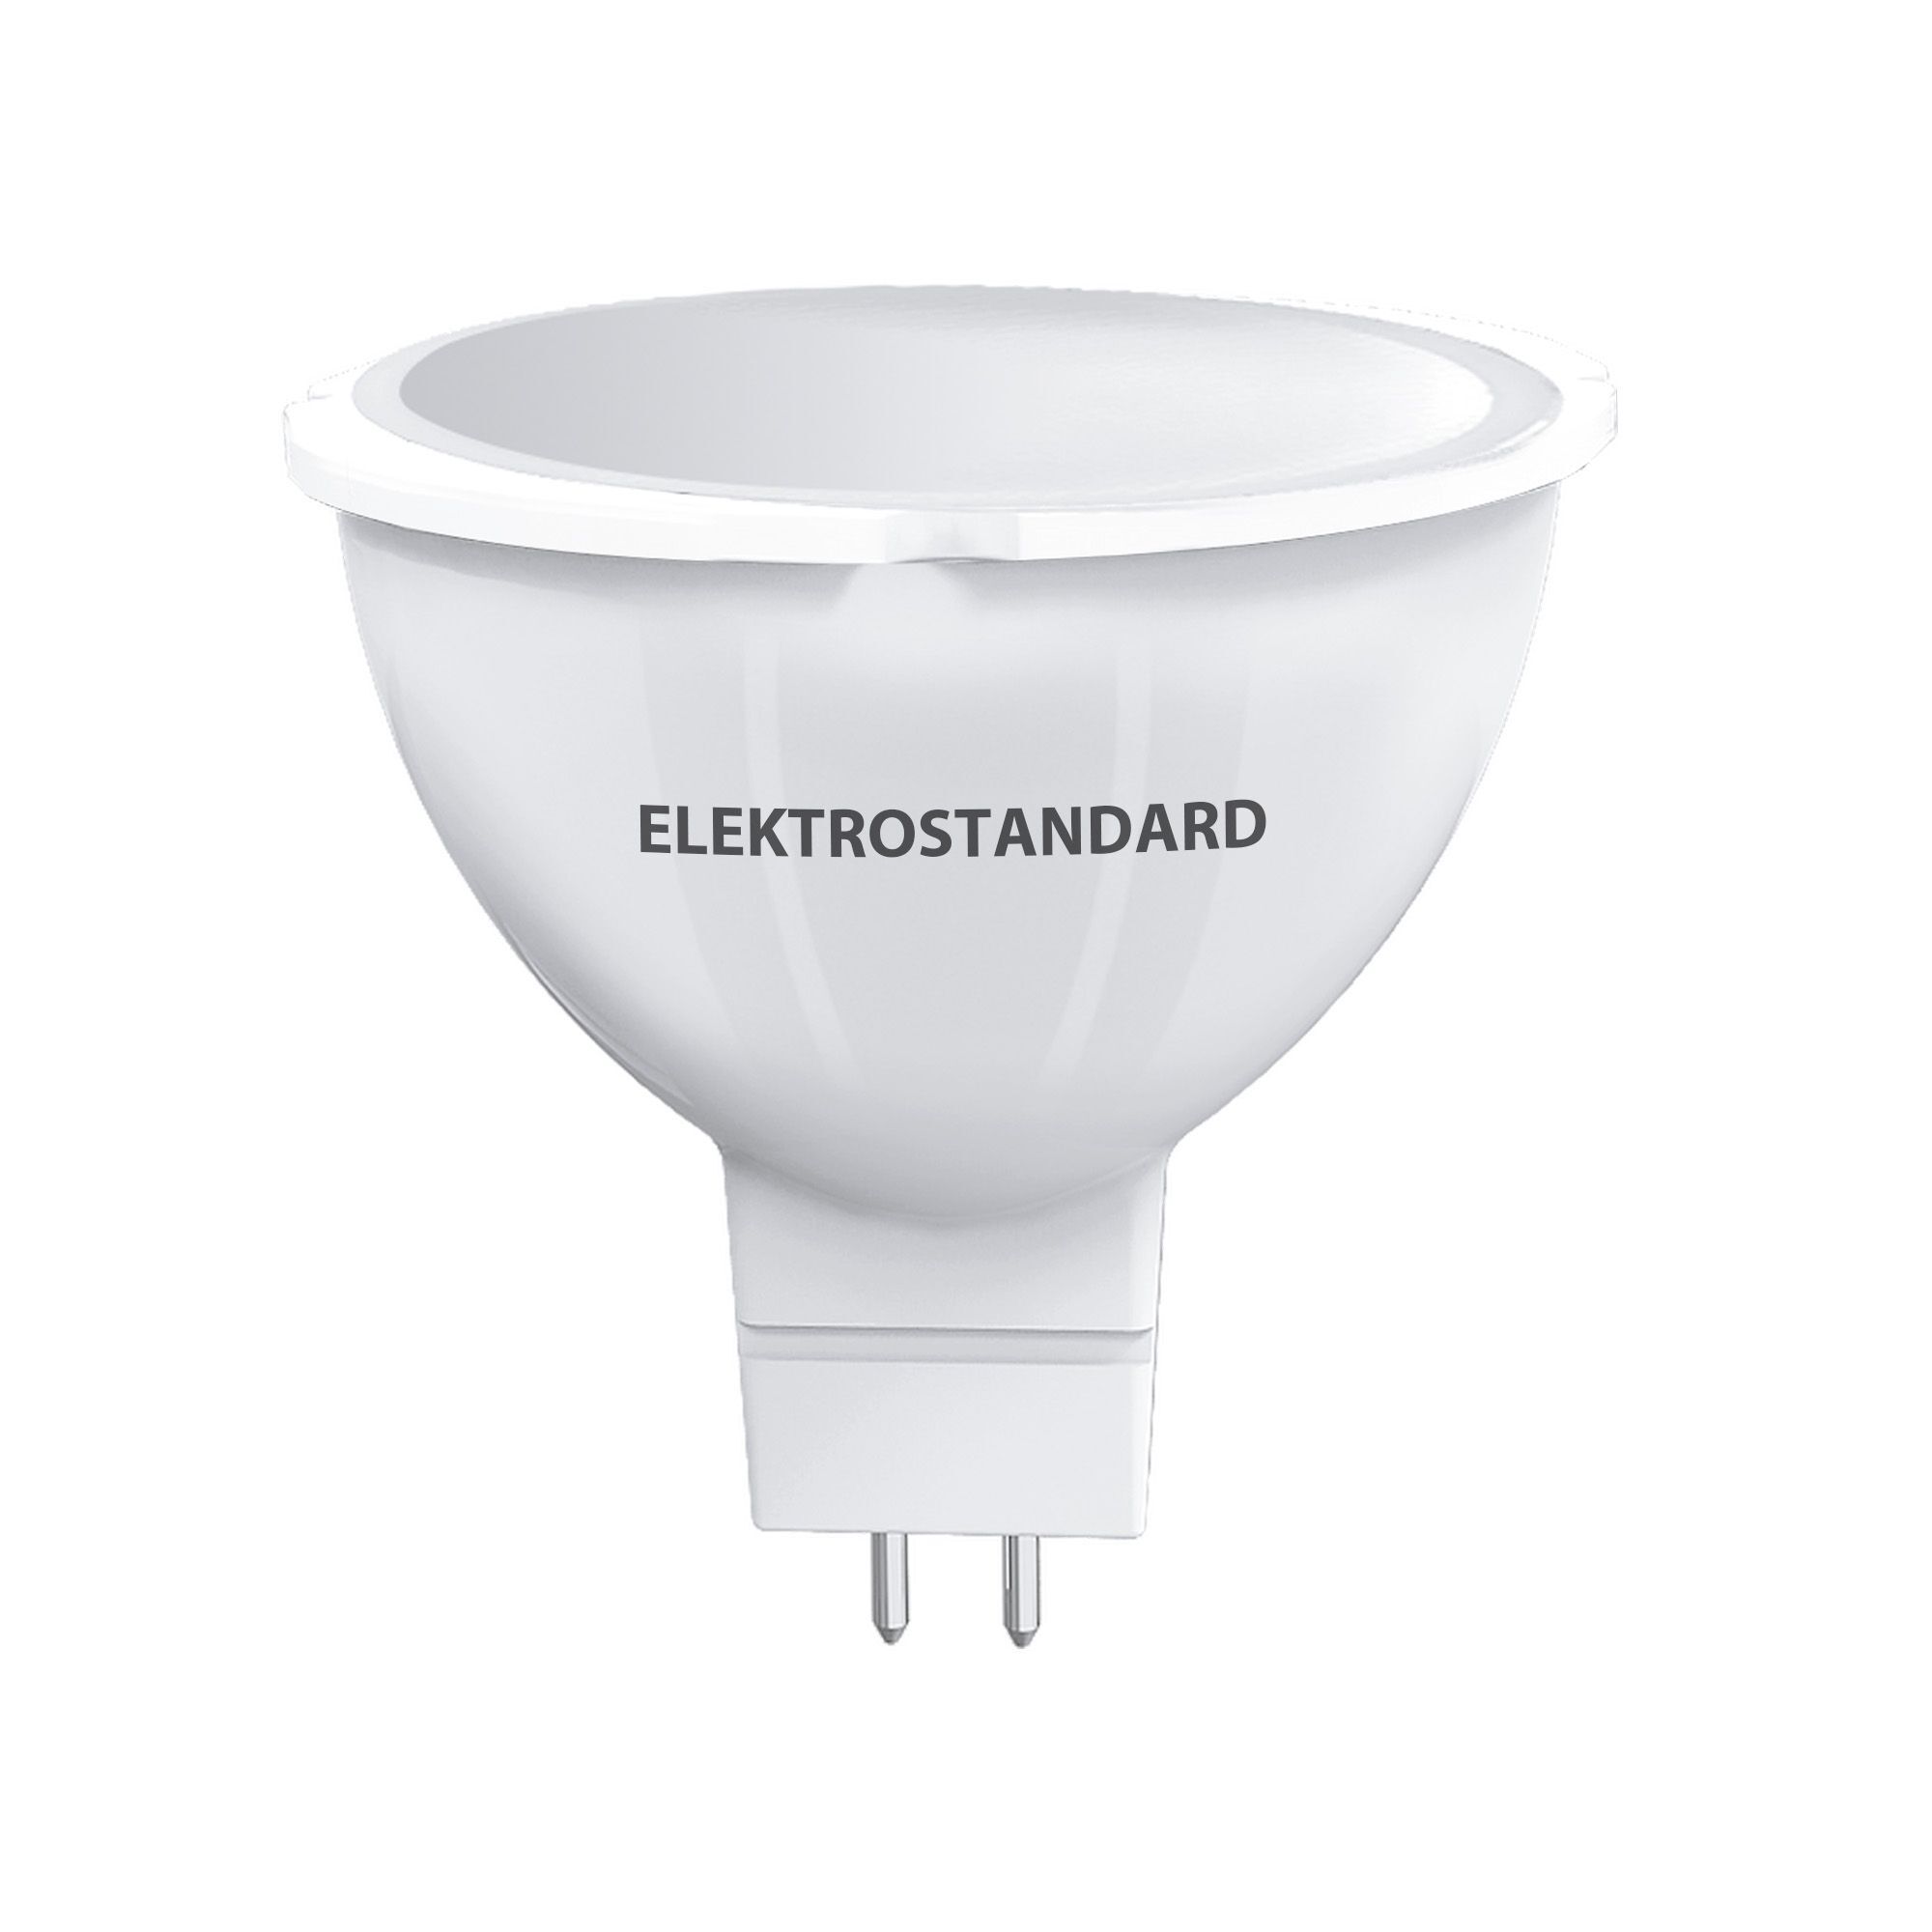 Лампа светодиодная Elektrostandard G5.3 JCDR 9 Вт 3300К теплый свет 220 В рефлектор (BLG5307)